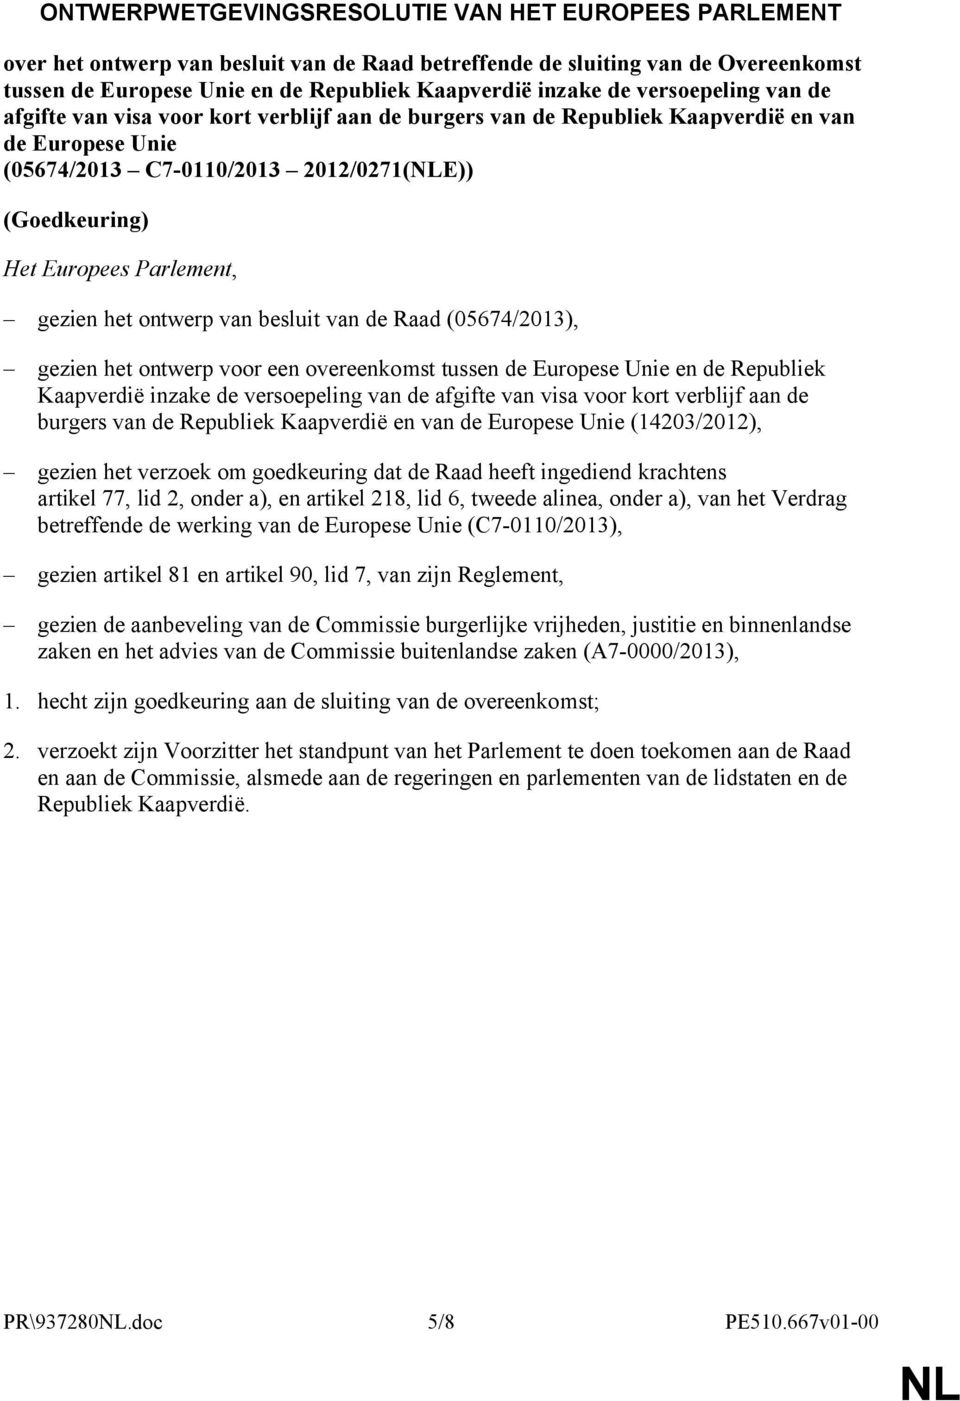 gezien het ontwerp van besluit van de Raad (05674/2013), gezien het ontwerp voor een overeenkomst tussen de Europese Unie en de Republiek Kaapverdië inzake de versoepeling van de afgifte van visa